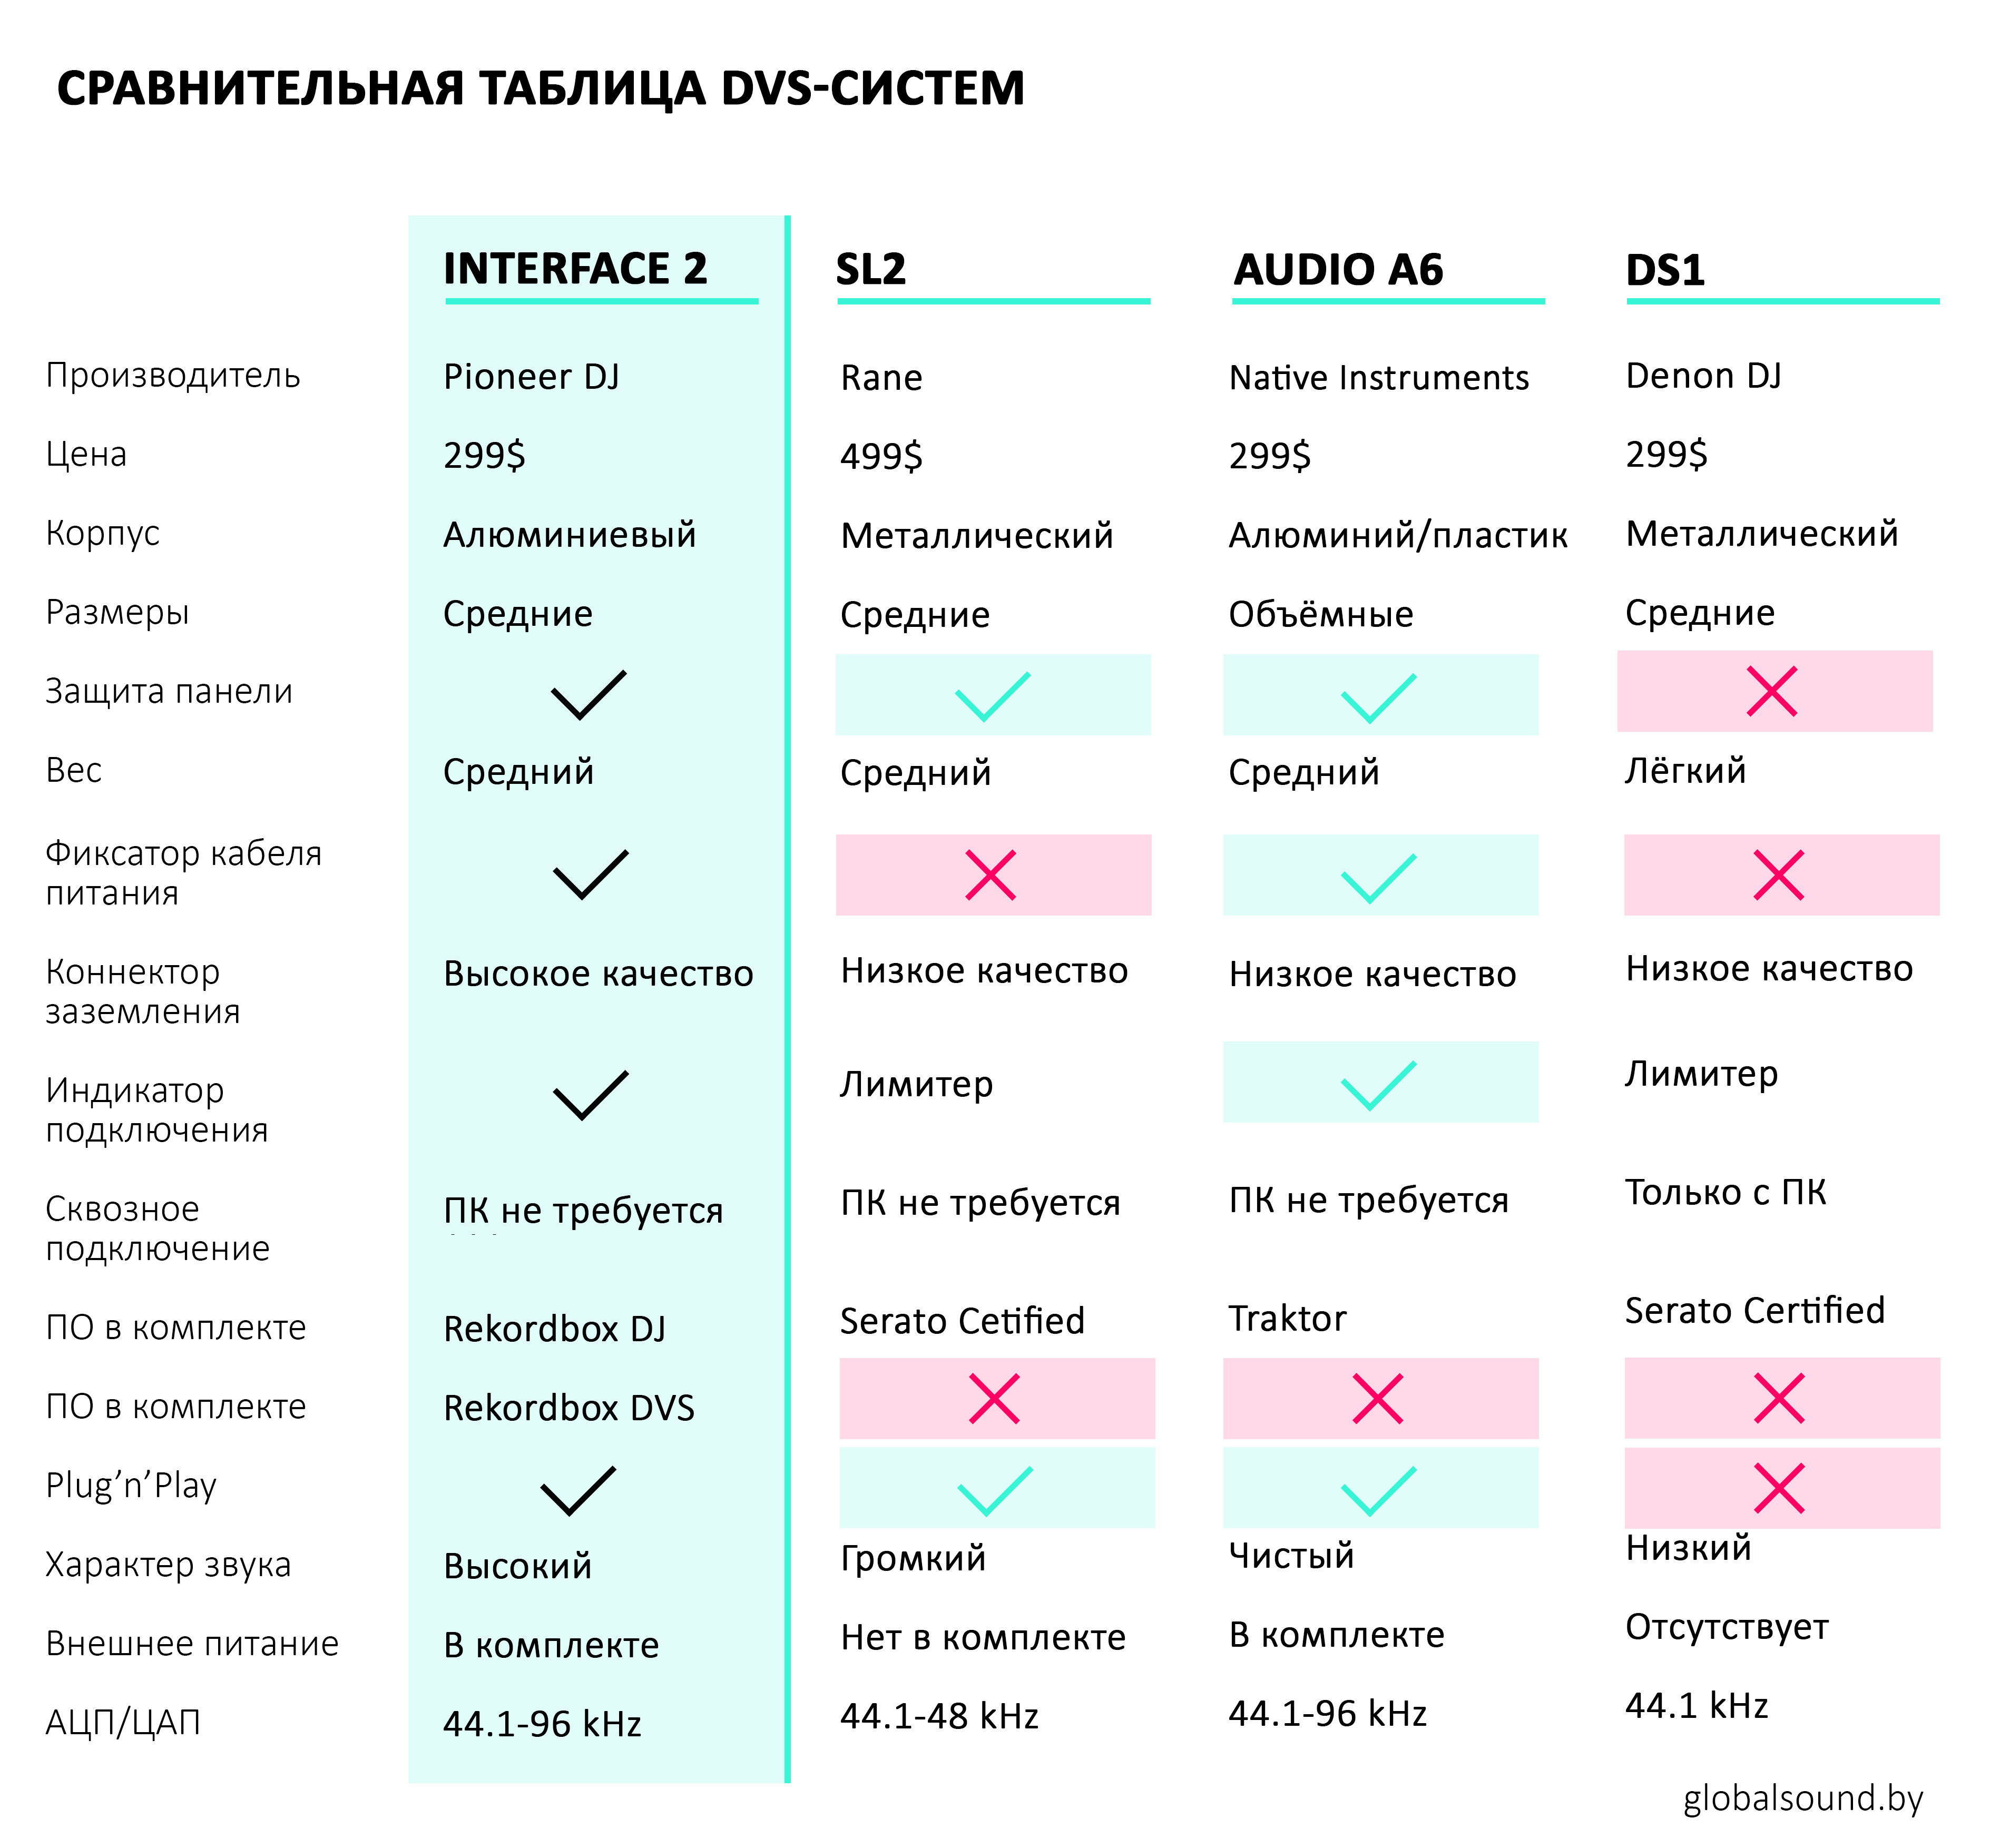 Сравнительная таблица DVS-систем